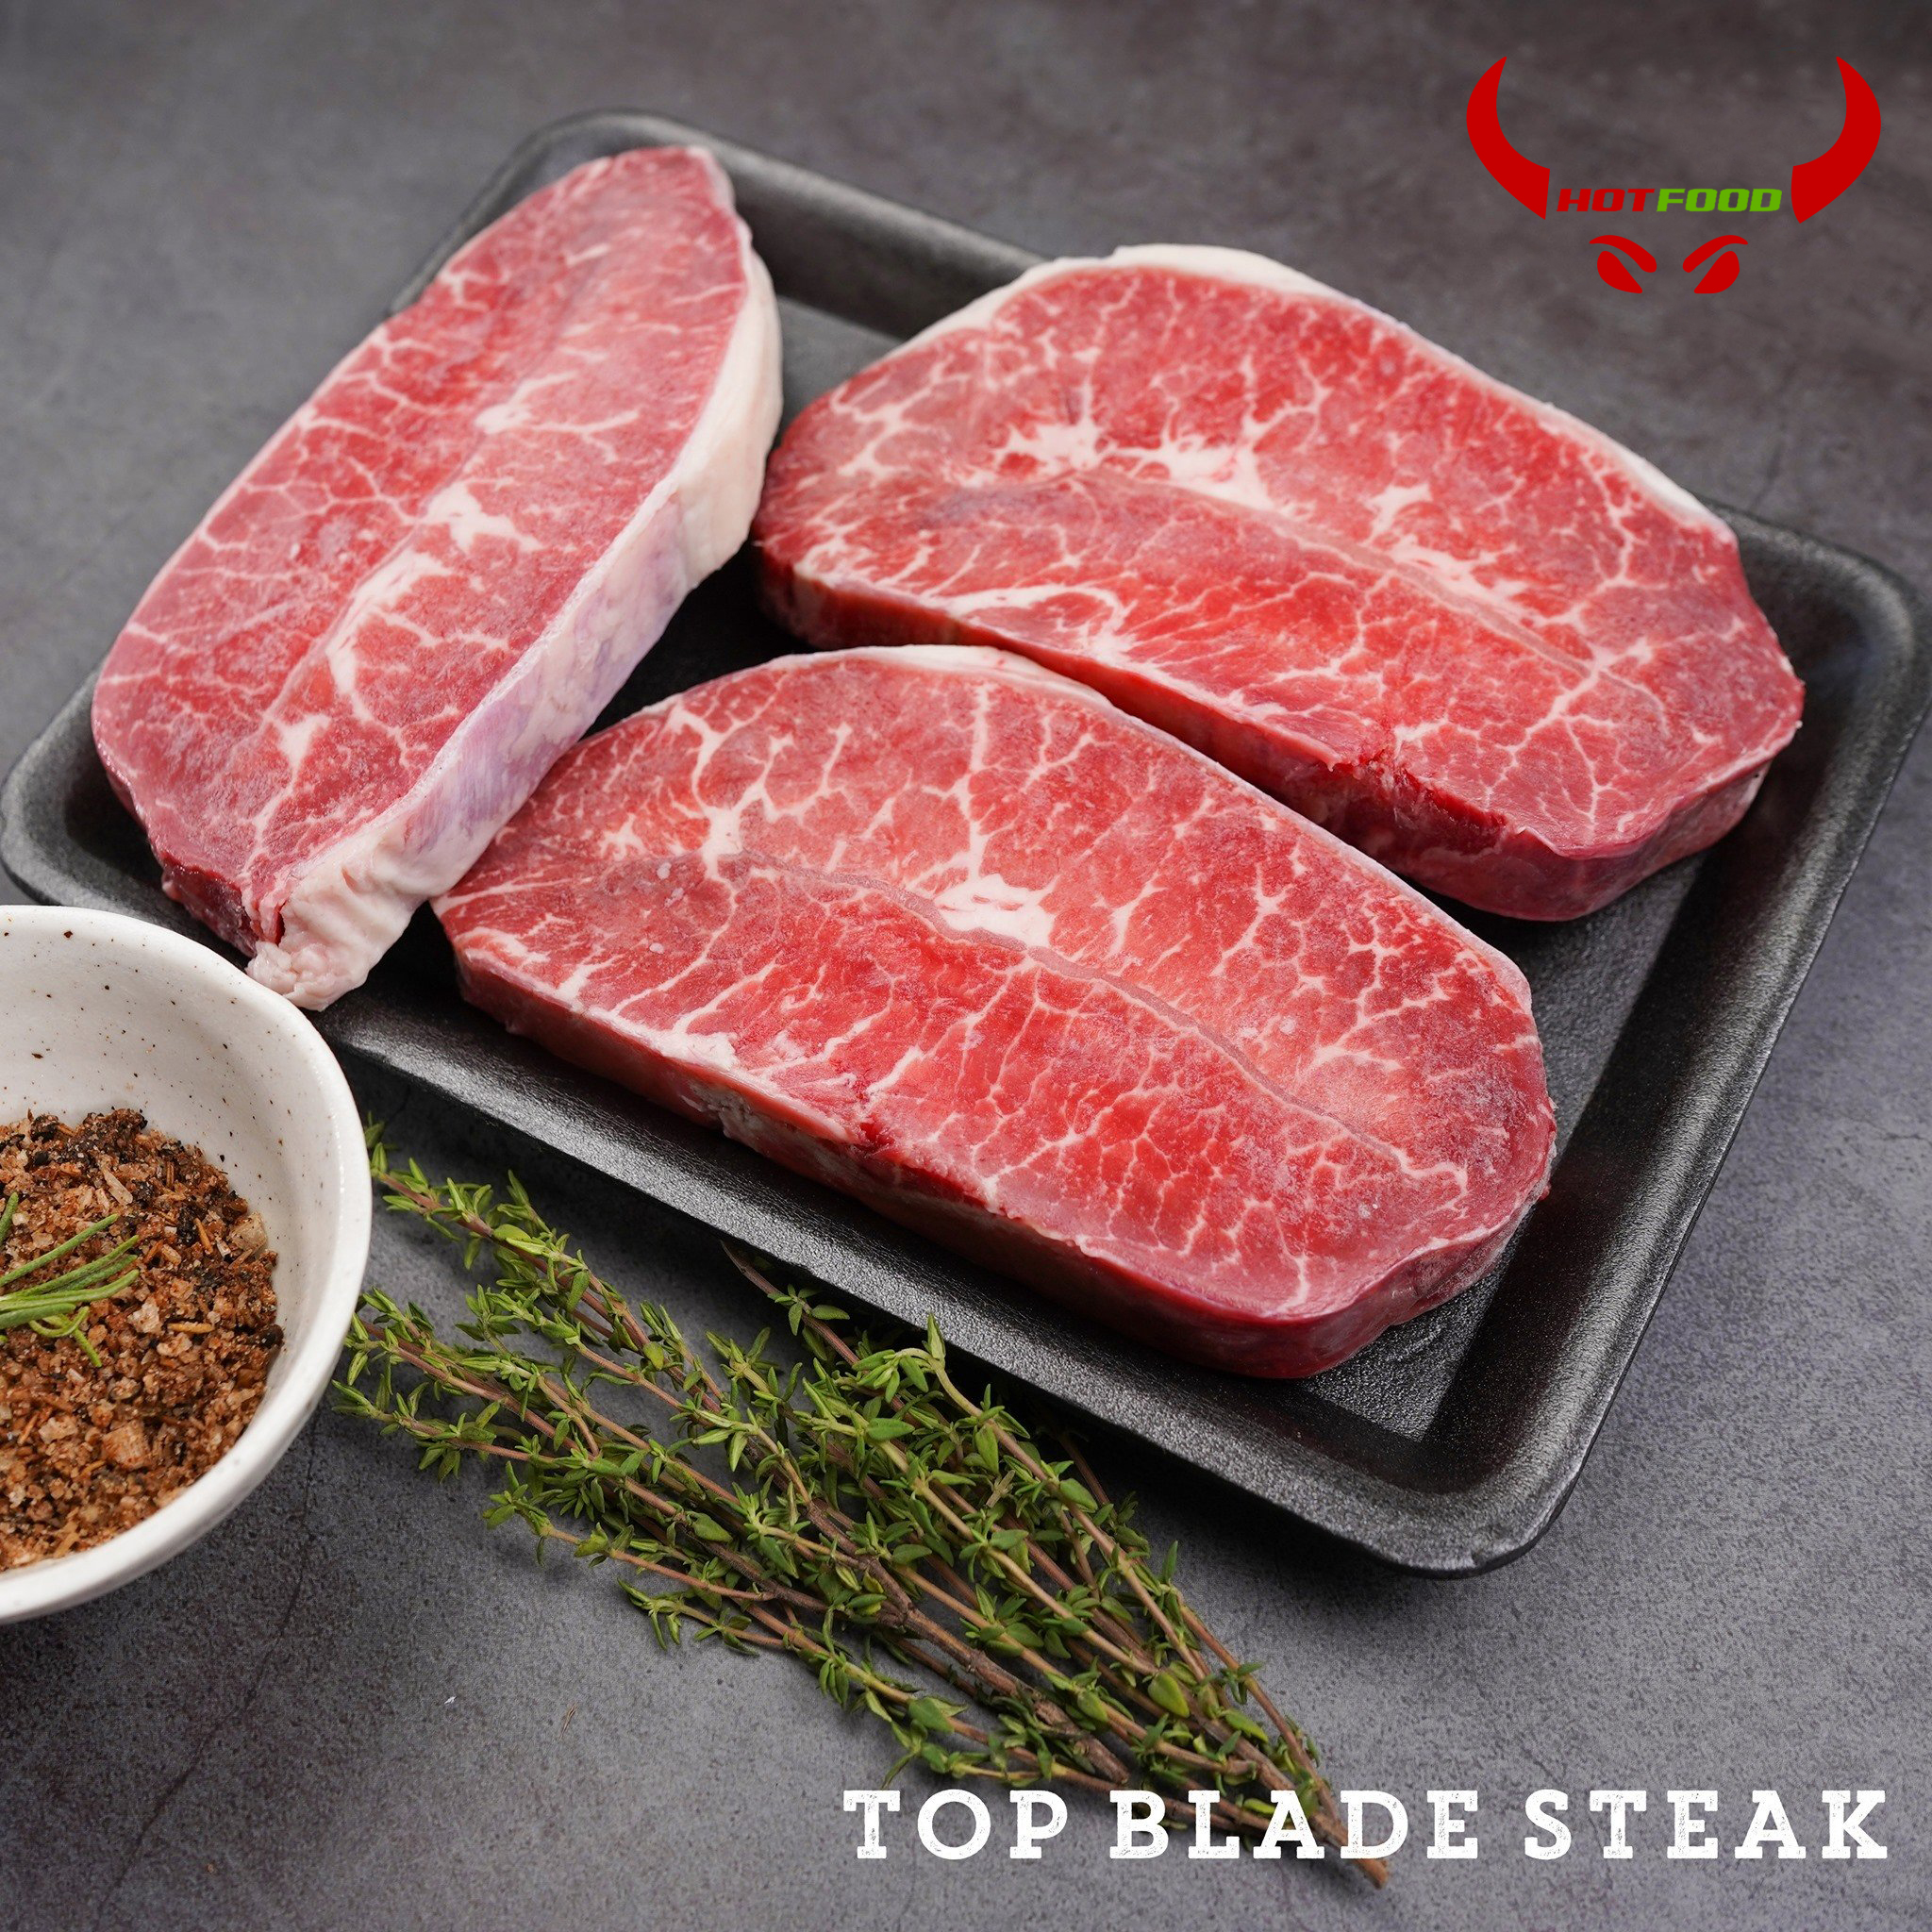 Lõi vai bò mỹ Top Blade Steak